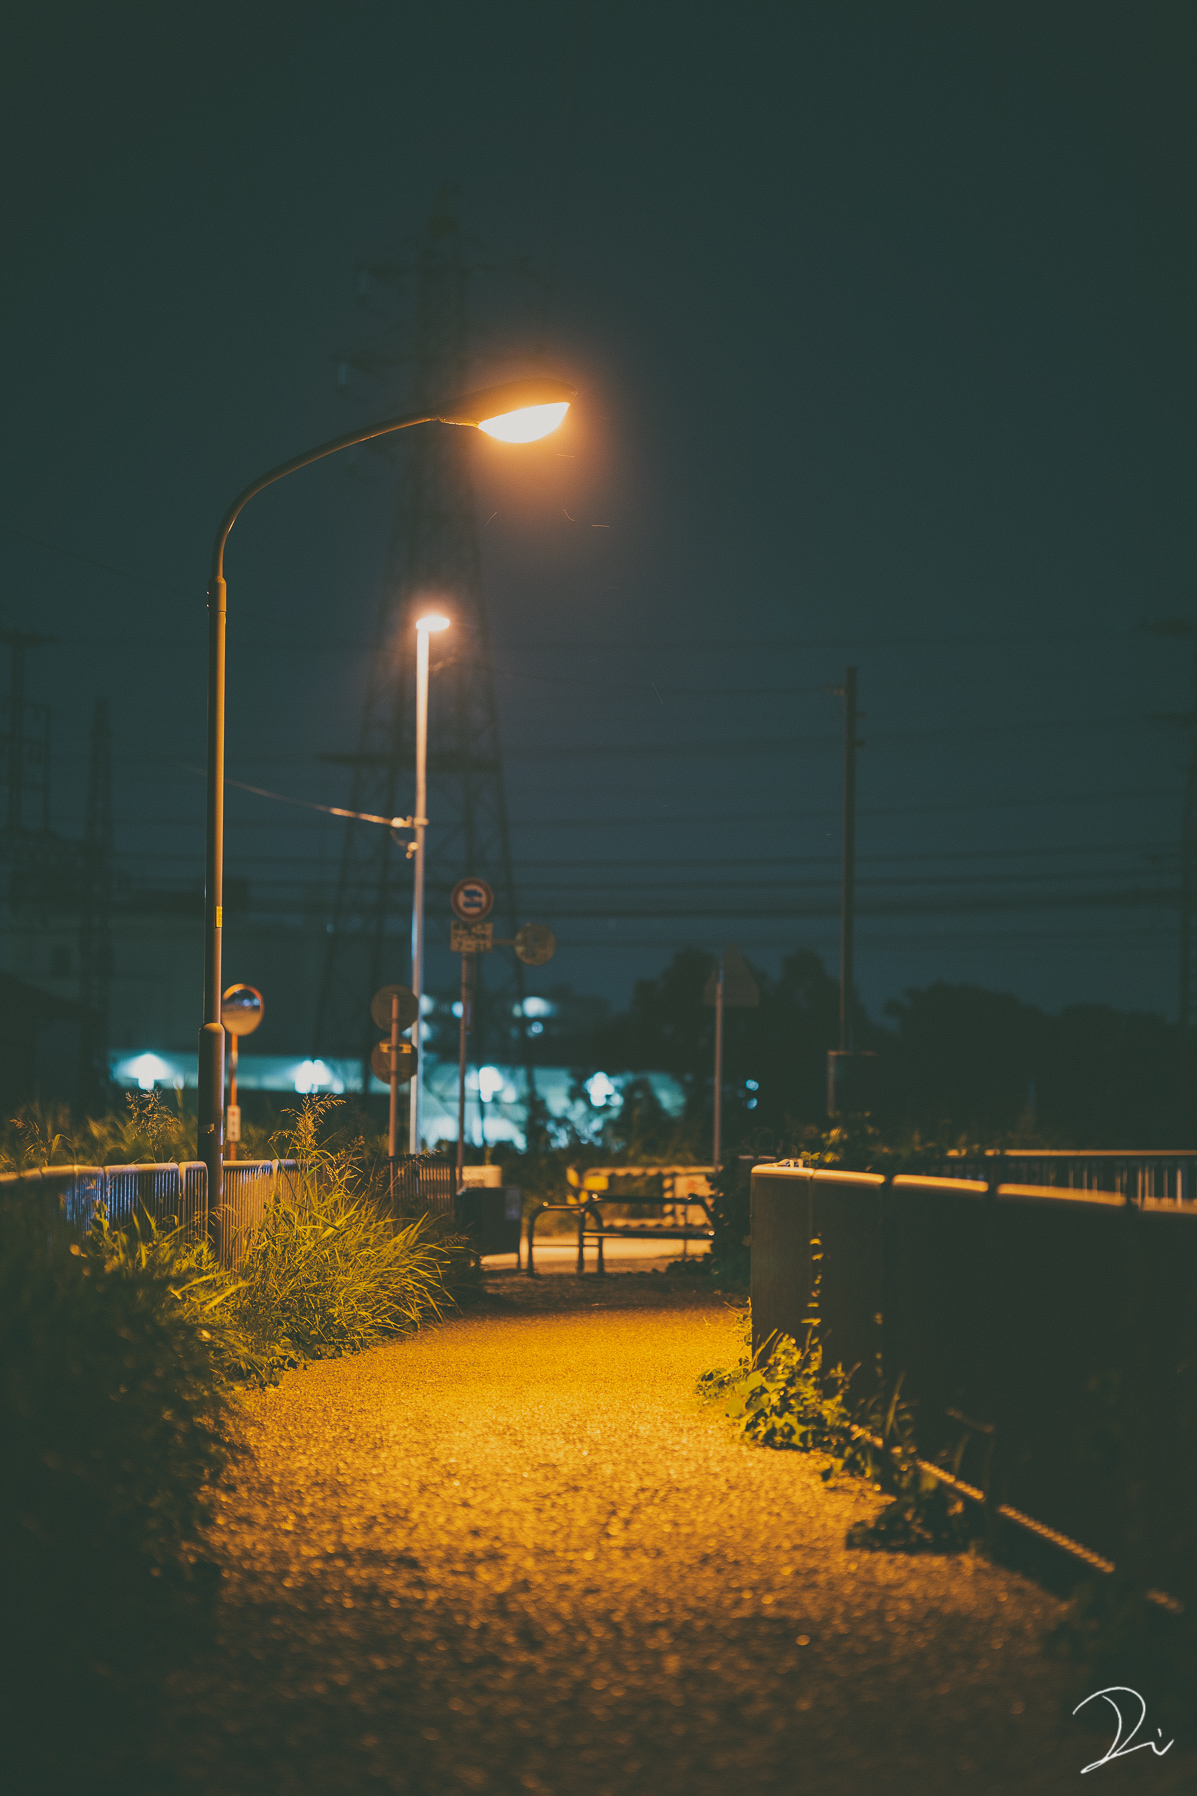 稲田大樹 うさだぬ 夜の道を照らす街灯の明かりが好き T Co M0hopj32zm Twitter